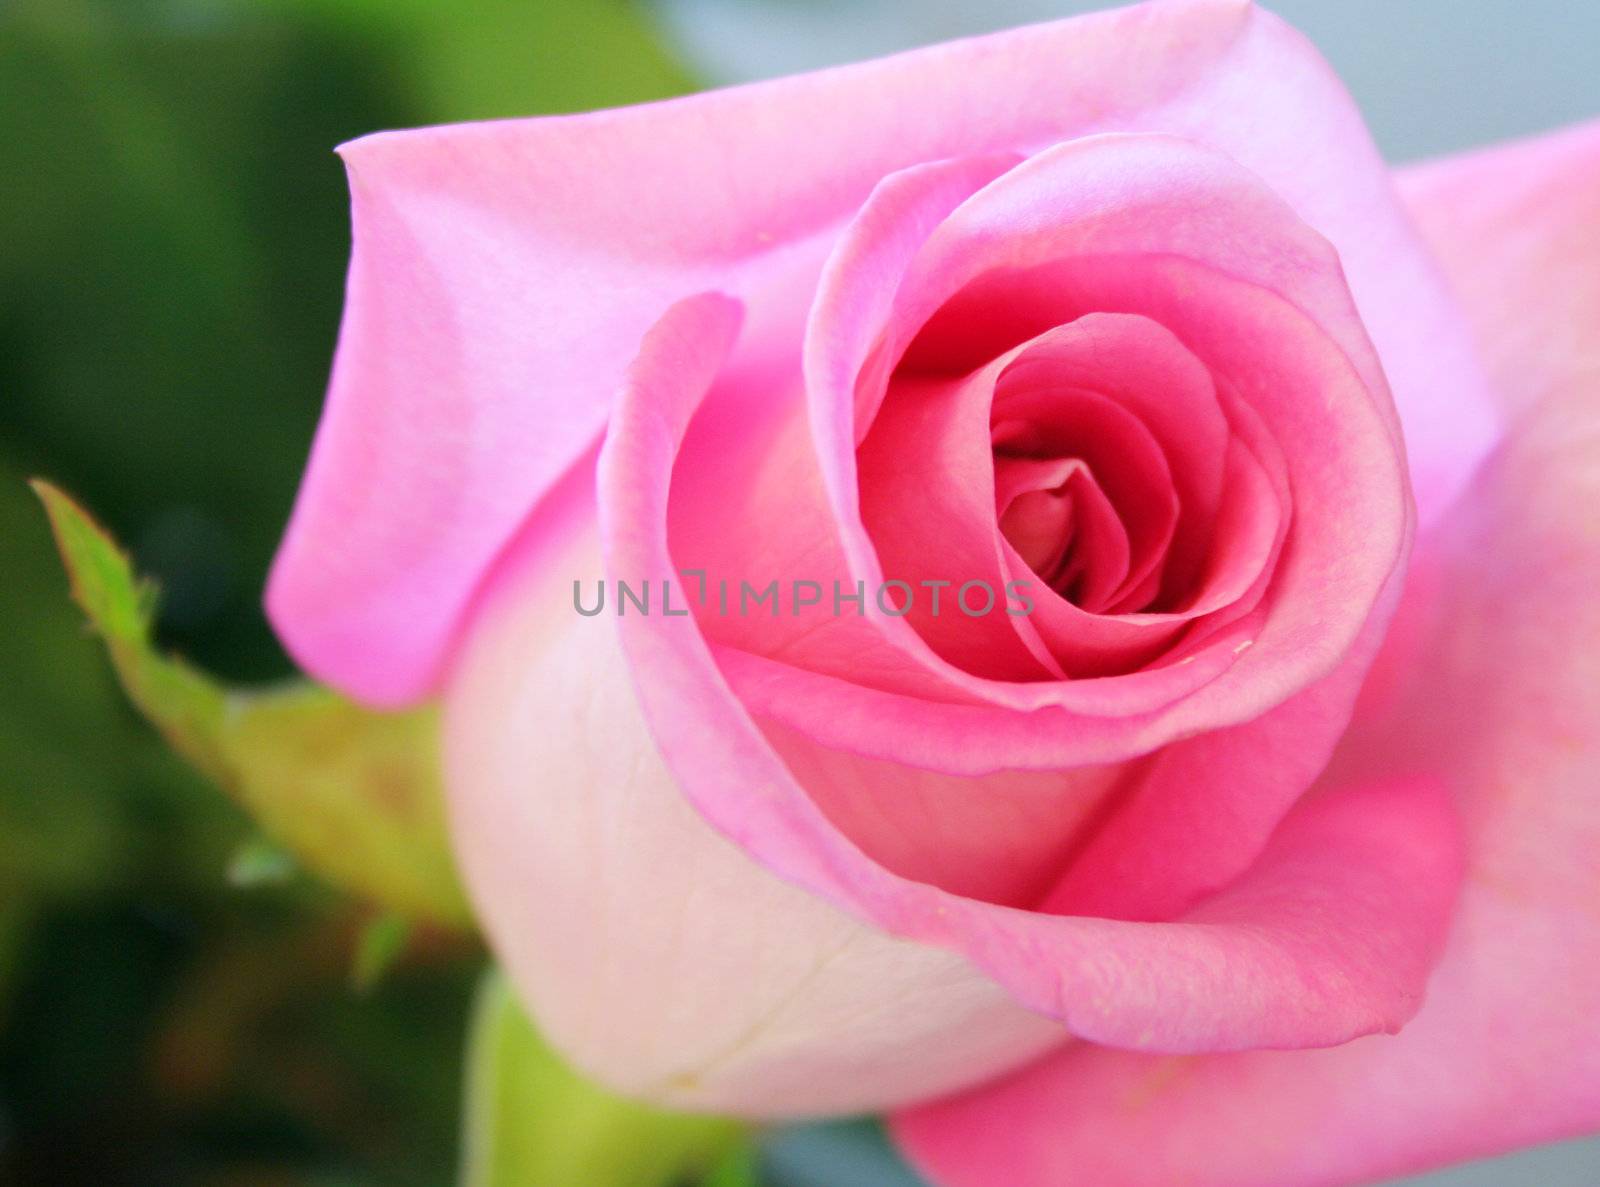 Soft pink rose by jarenwicklund